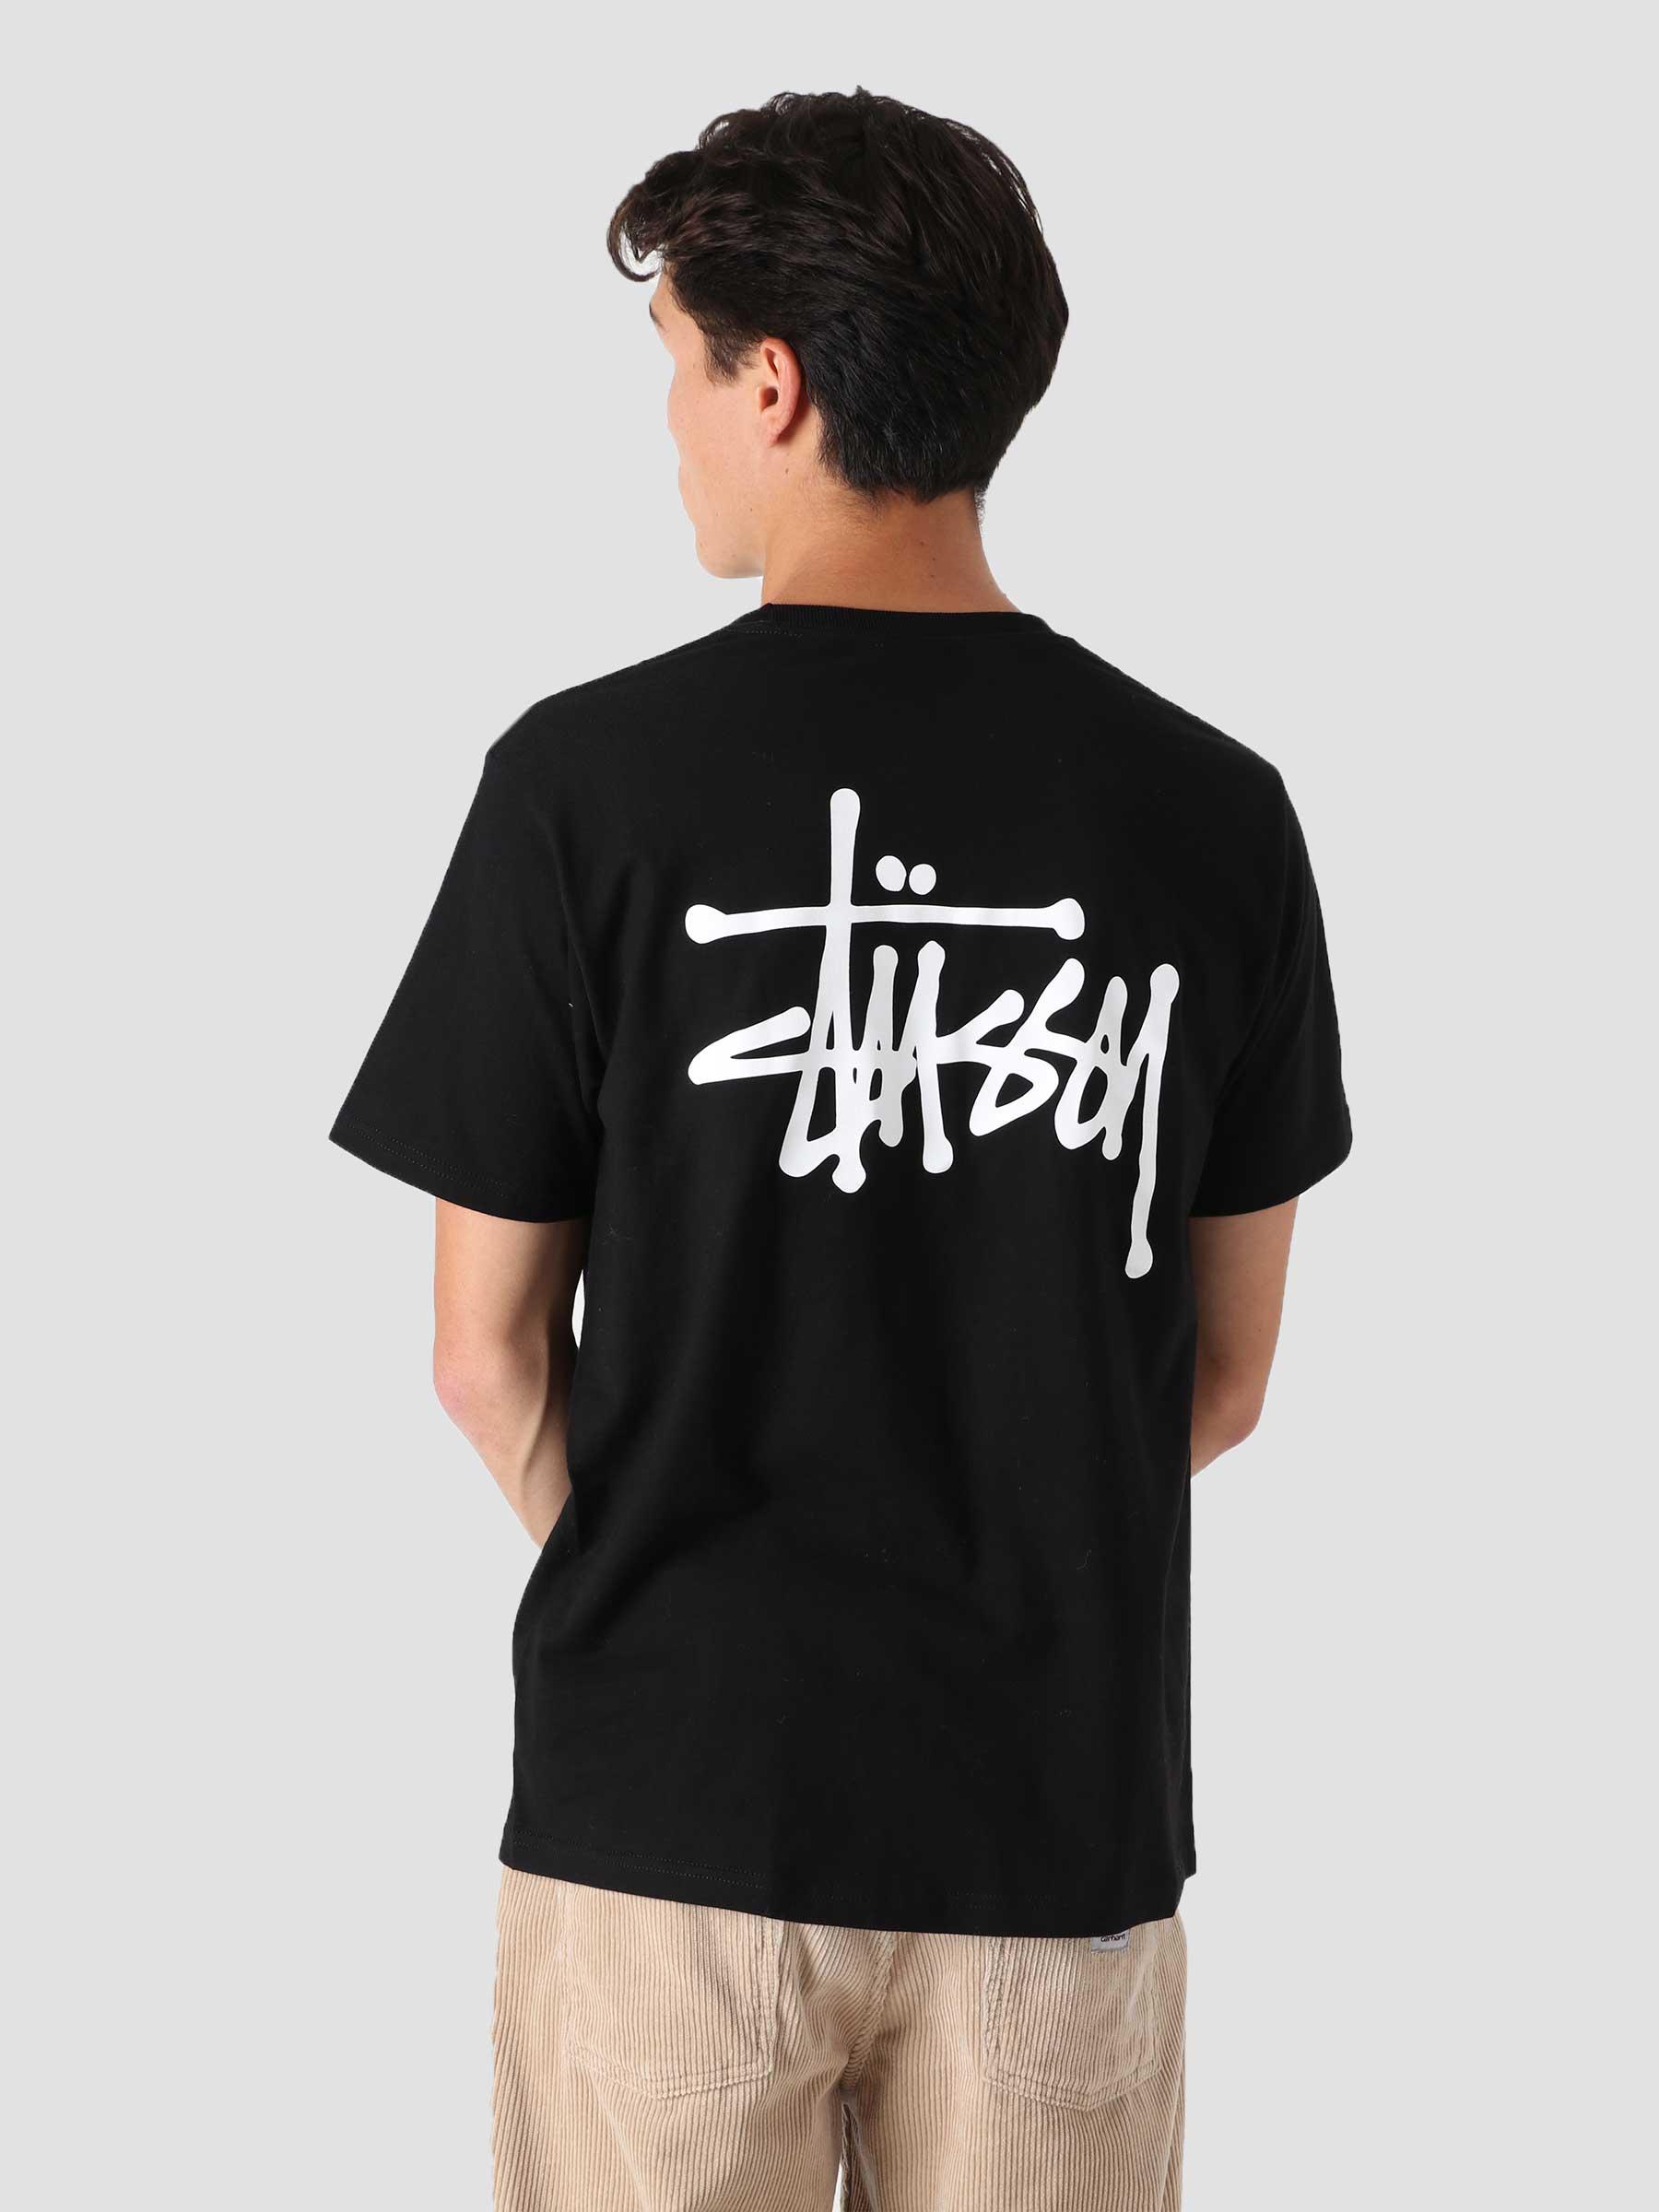 Stussy Basic Stussy T-Shirt Black - Freshcotton